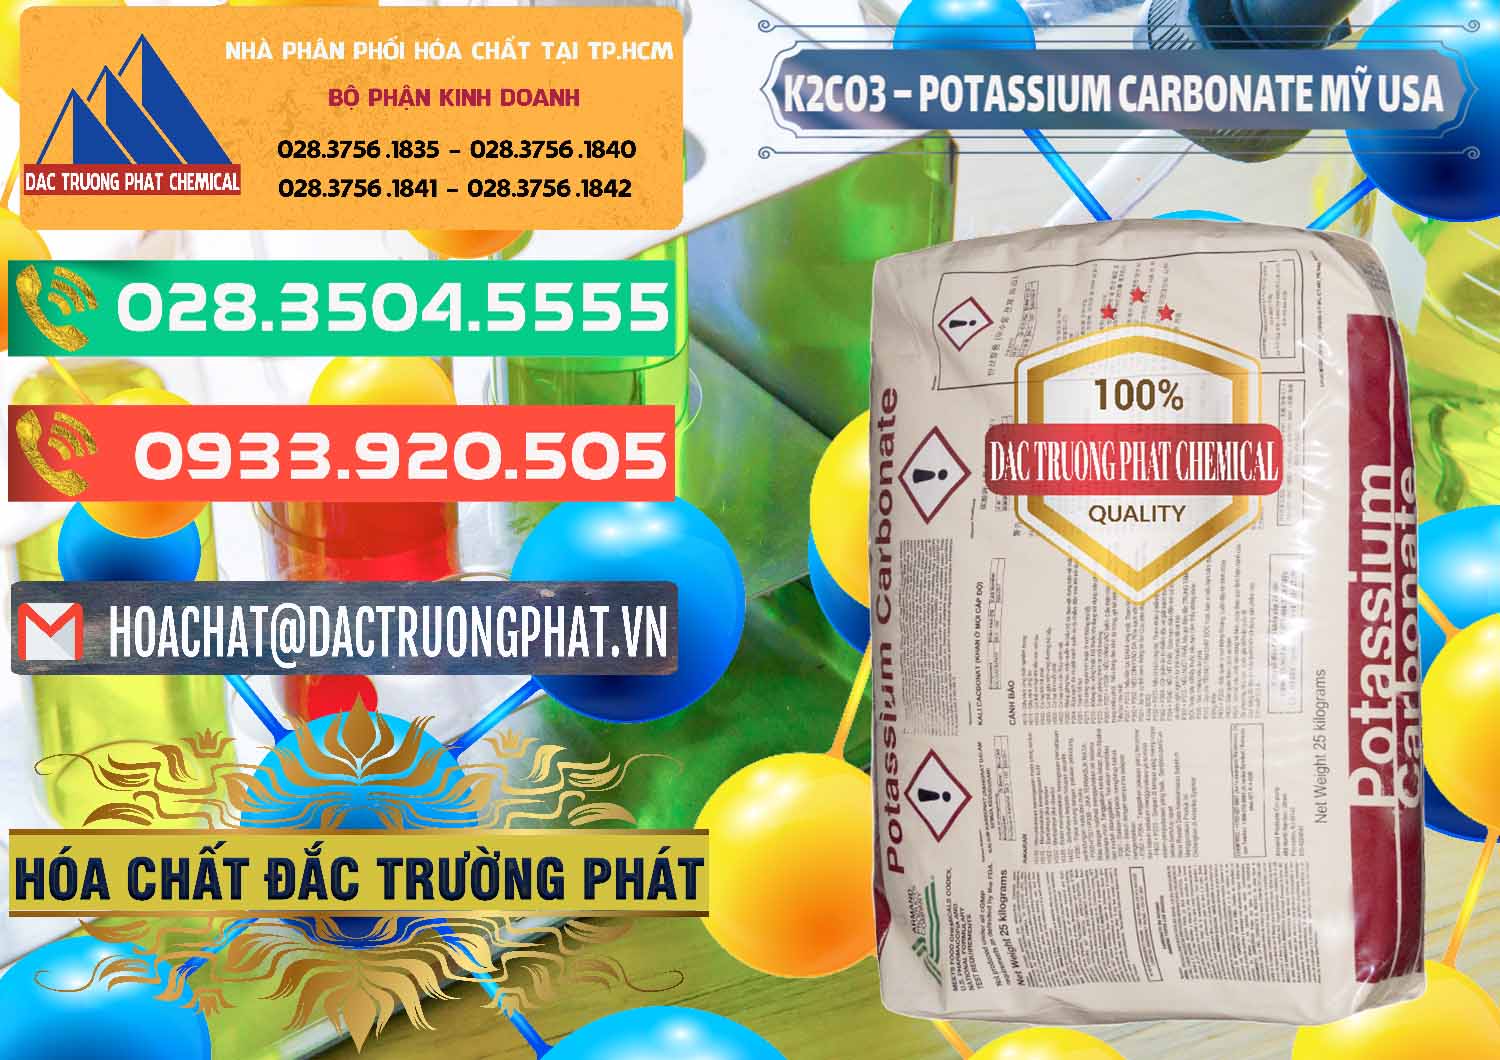 Cty cung cấp và bán K2Co3 – Potassium Carbonate Mỹ USA - 0082 - Chuyên phân phối và nhập khẩu hóa chất tại TP.HCM - congtyhoachat.com.vn